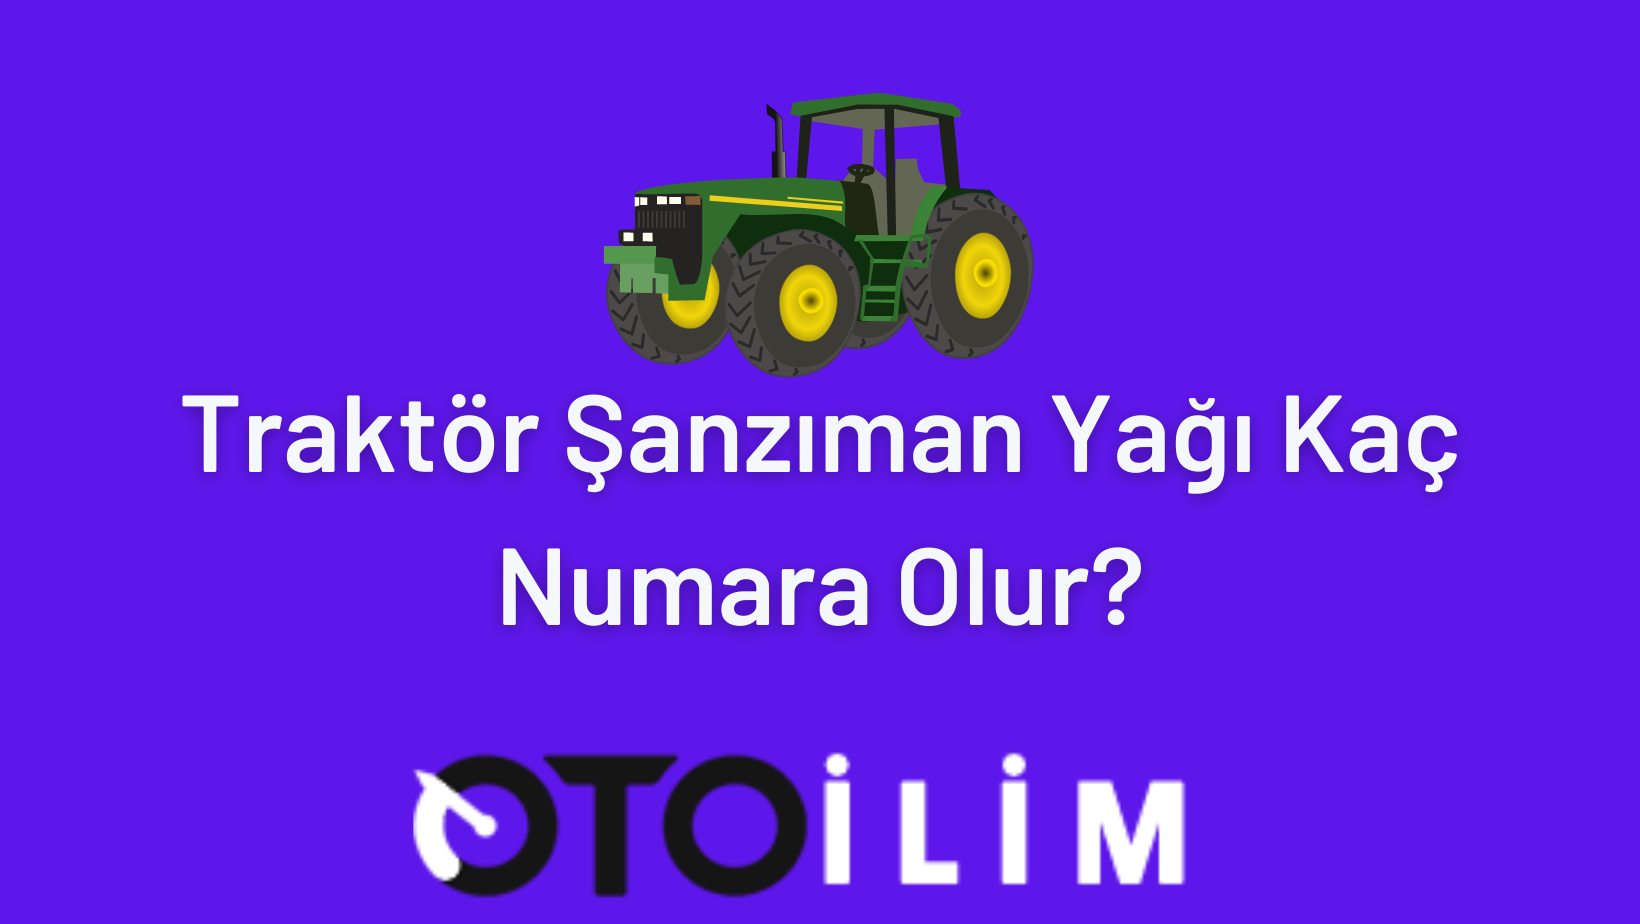 Traktor Sanziman Yagi Kac Numara Olur 1